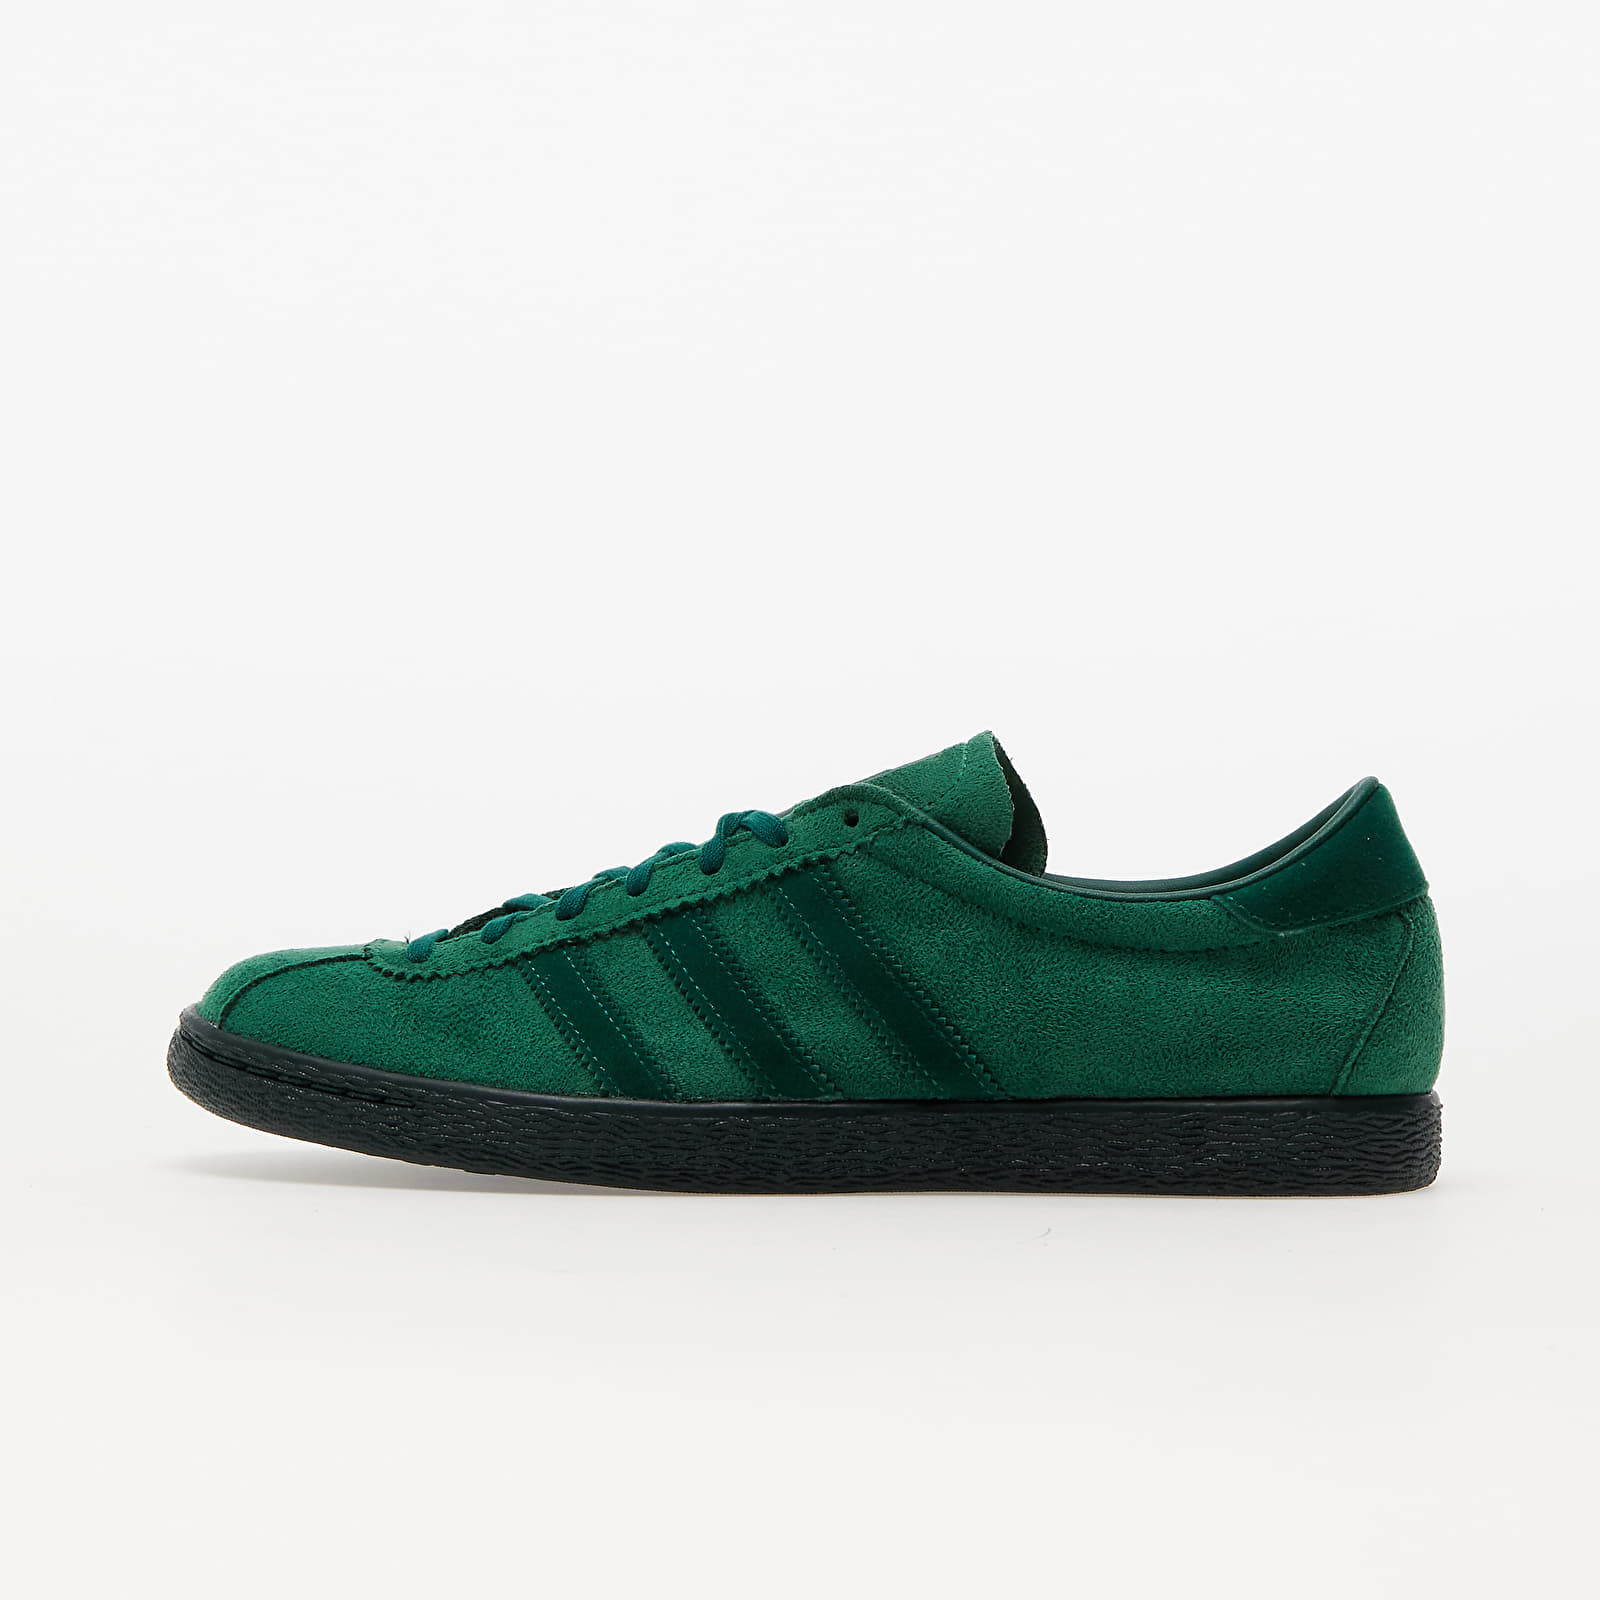 Ανδρικά παπούτσια adidas Tobacco Gruen Dark Green/ Dark Green 